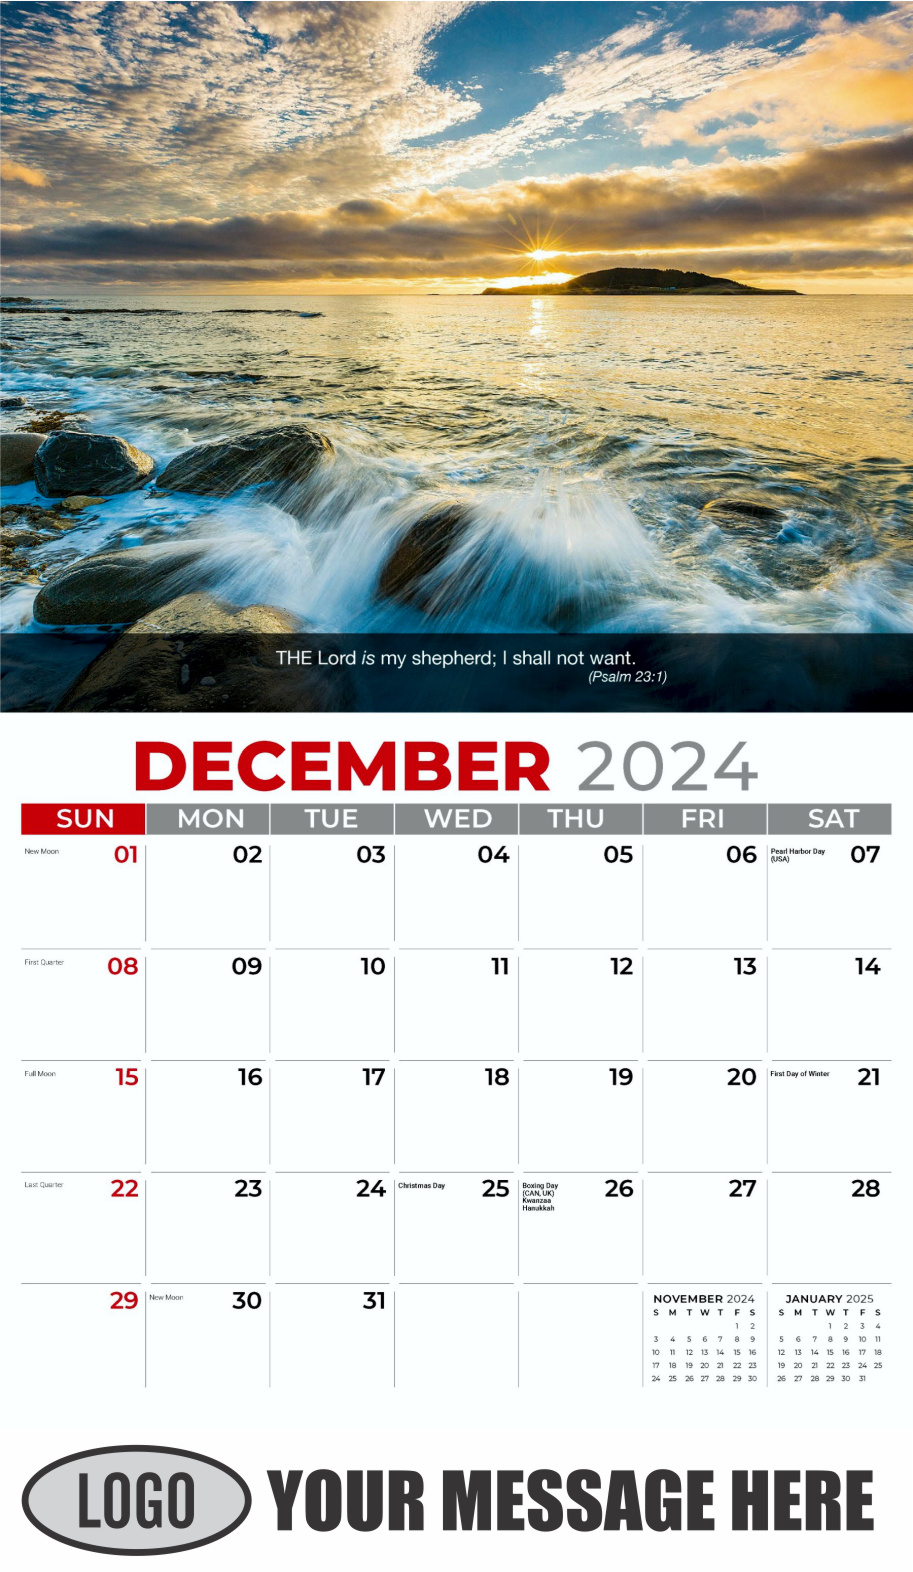 Faith Passages 2024 Christian Business Advertising Calendar - December